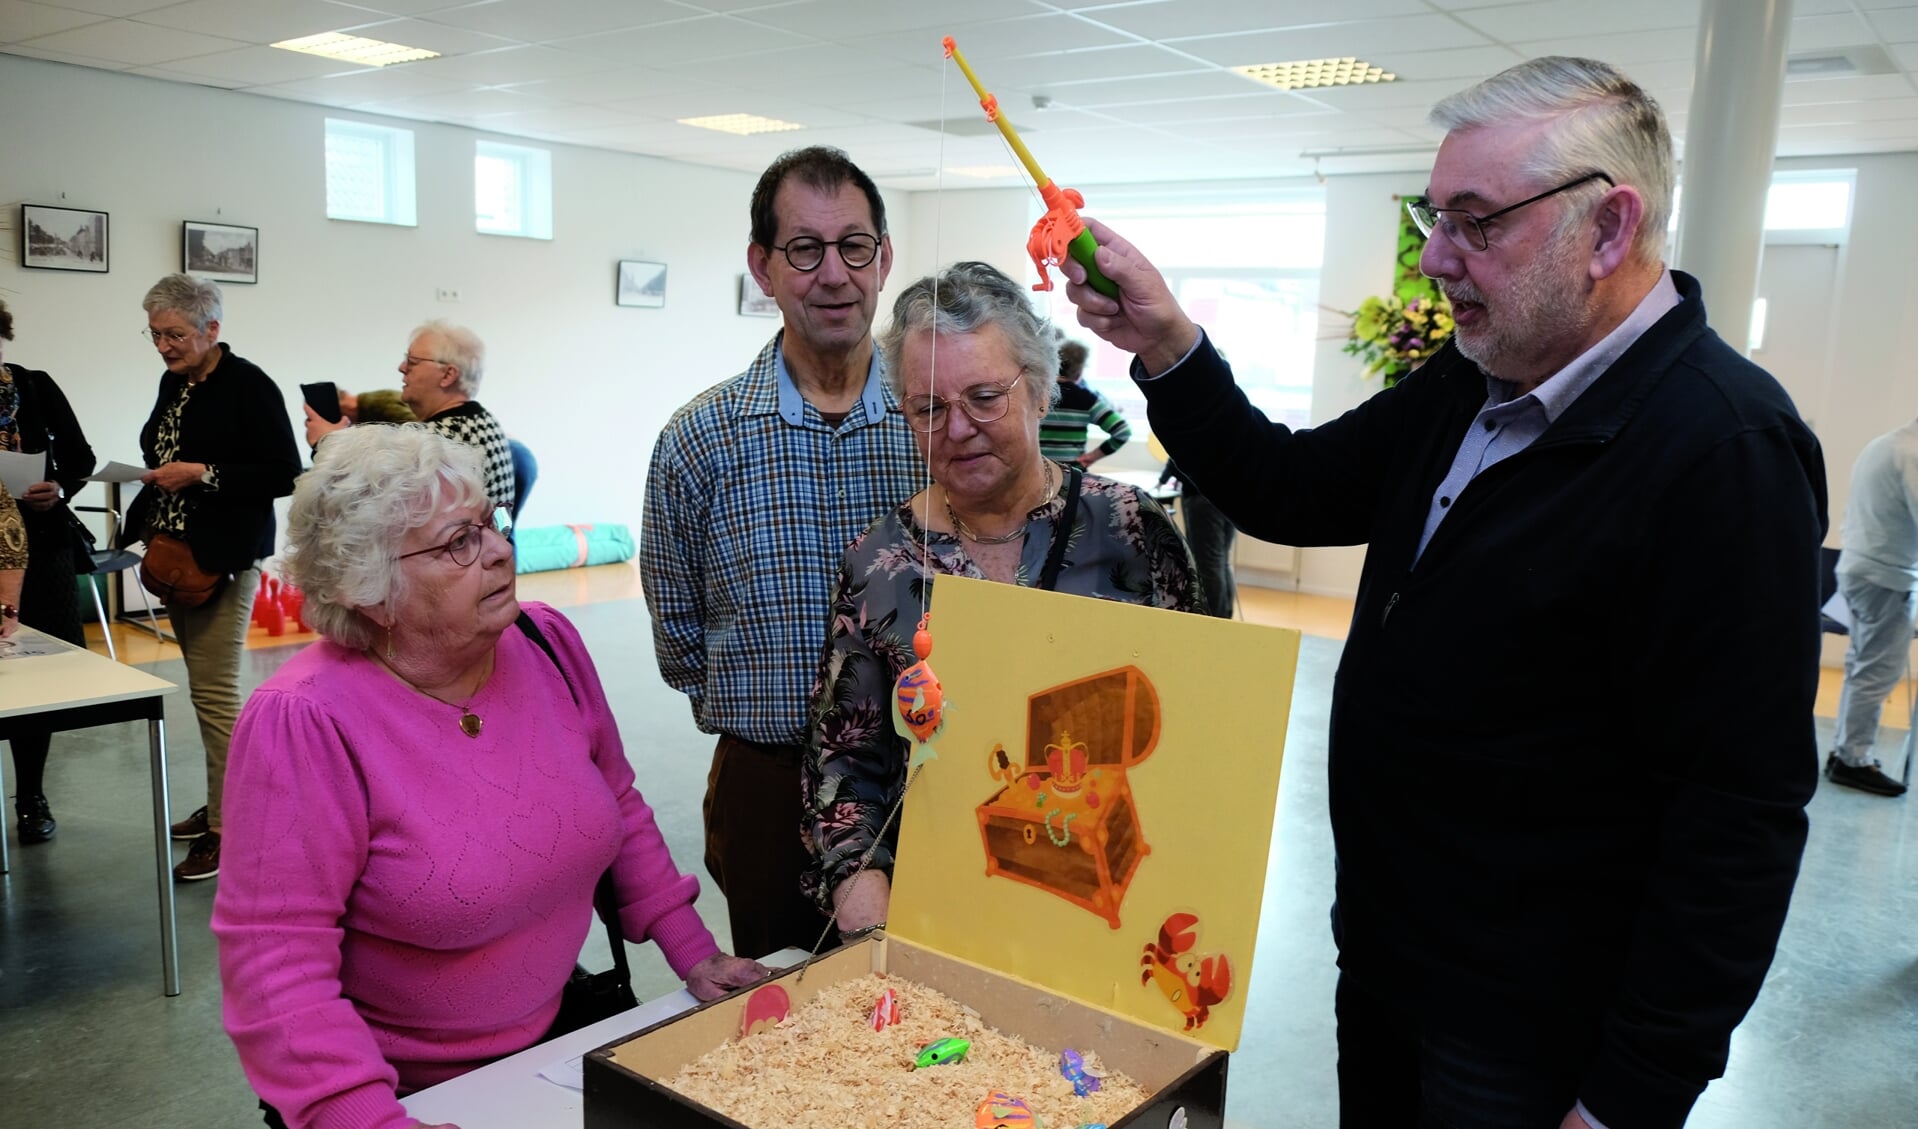 Activiteitenorganisator Piet Vriens toont deelnemers aan de Oud-Hollandse Spelochtend hoe een van de spelletjes moet worden gespeeld.